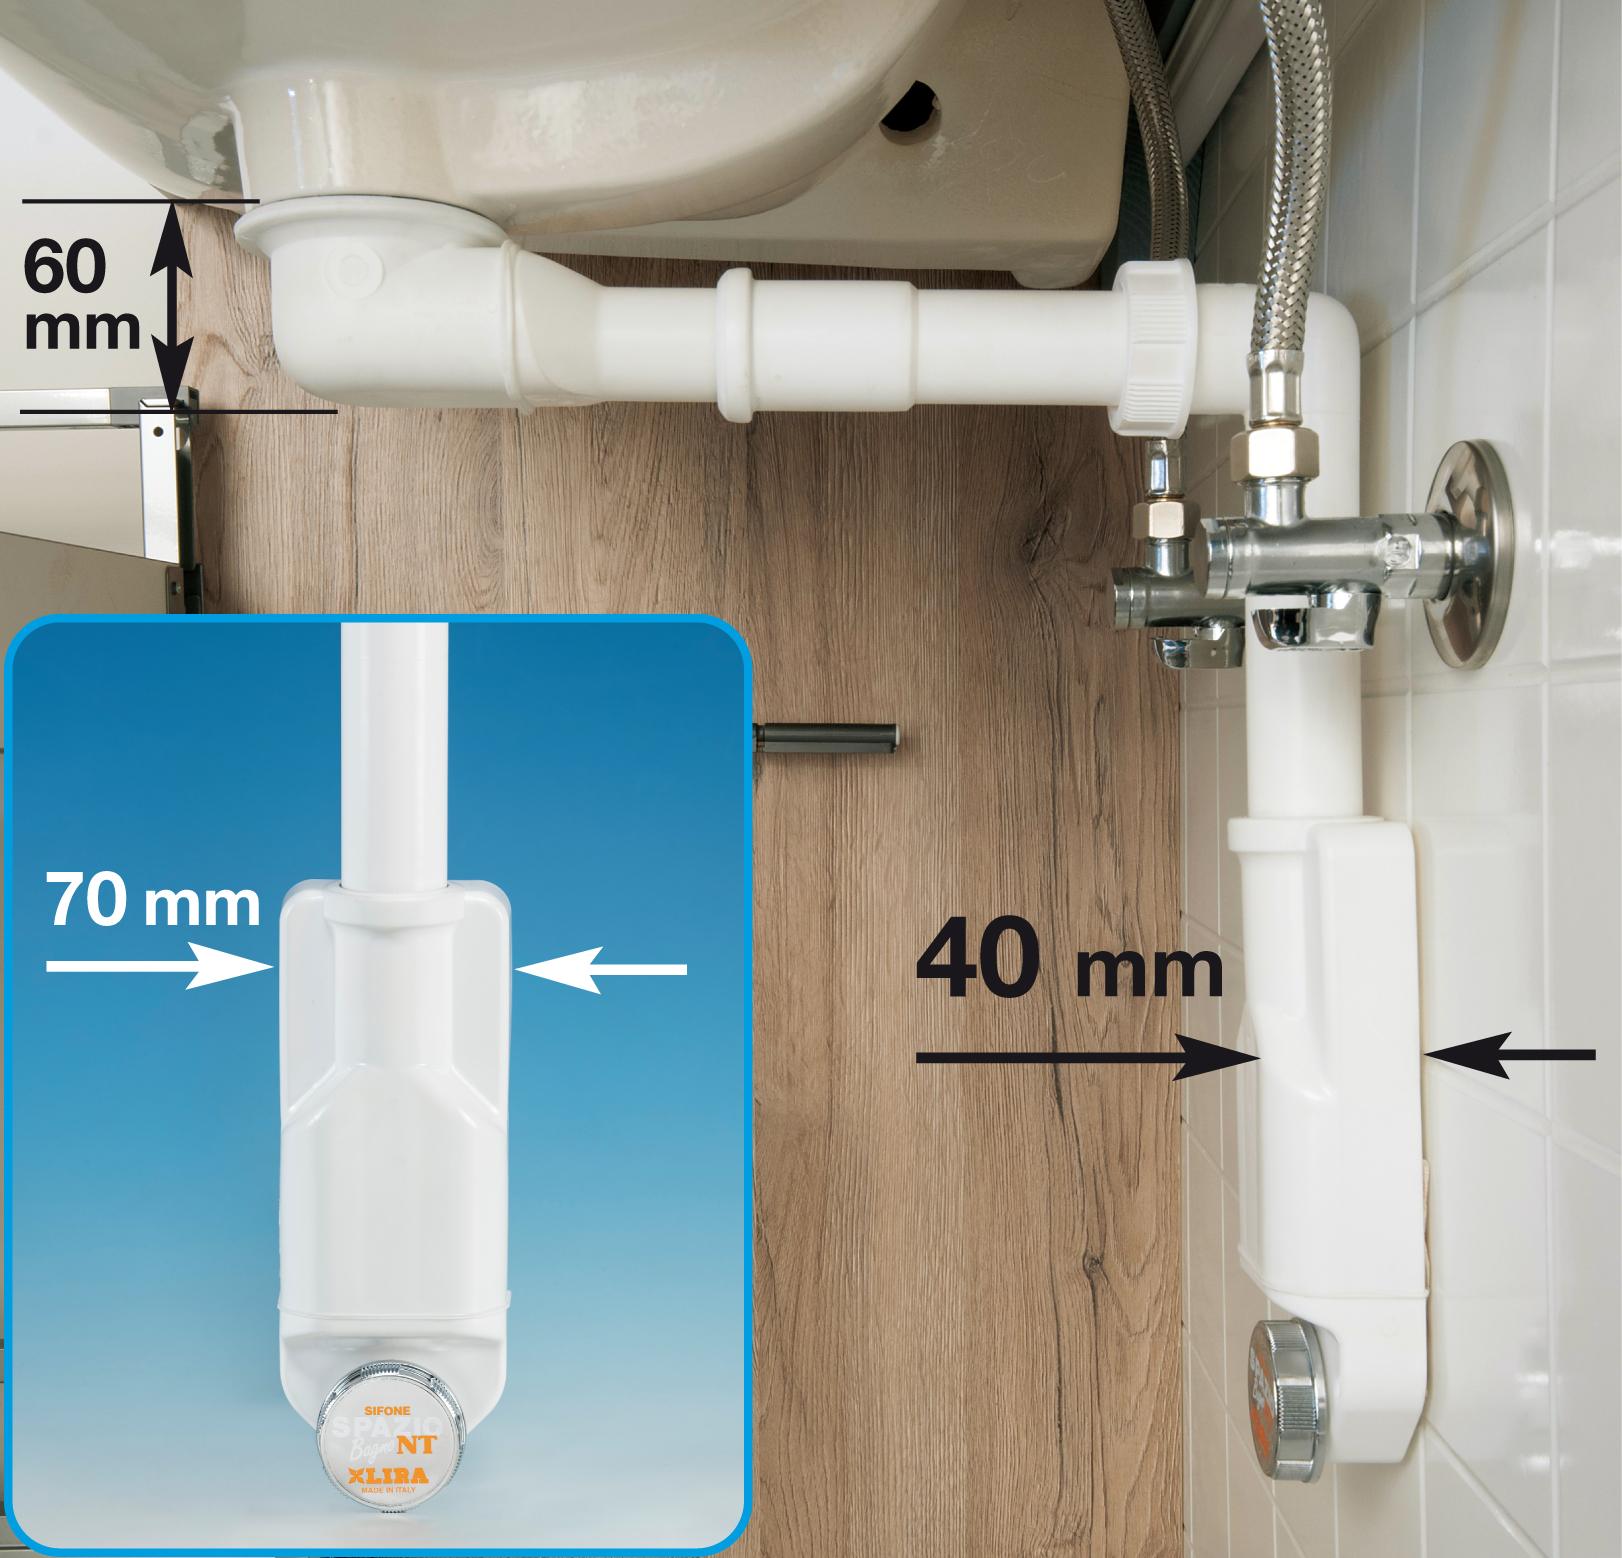 Sifone salvaspazio: ottimizzare lo spazio sotto il lavabo del bagno